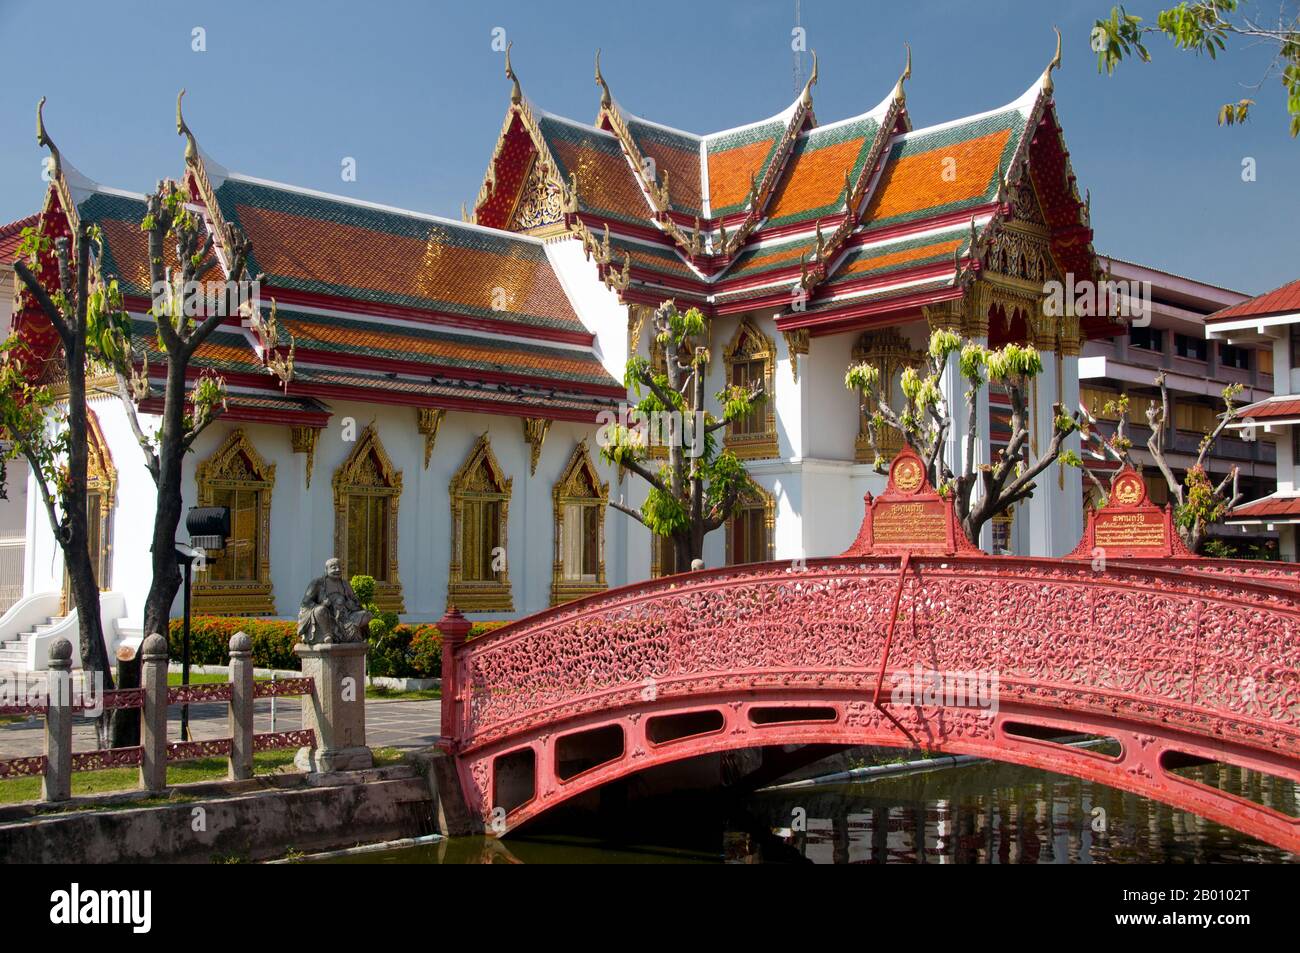 Thaïlande: Pont de fer à Wat Benchamabophit, Bangkok. Le nom complet du temple est Wat Benchamabophit Dusitvanaram. Il est également connu sous le nom de temple de marbre. La construction du temple a commencé en 1899 à la demande du roi Chulalongkorn après la construction de son palais à proximité. Le nom du temple signifie littéralement le temple du cinquième roi situé à proximité du palais Dusit. Il a été conçu par le prince Naris, demi-frère du roi, et est construit en marbre italien. Banque D'Images